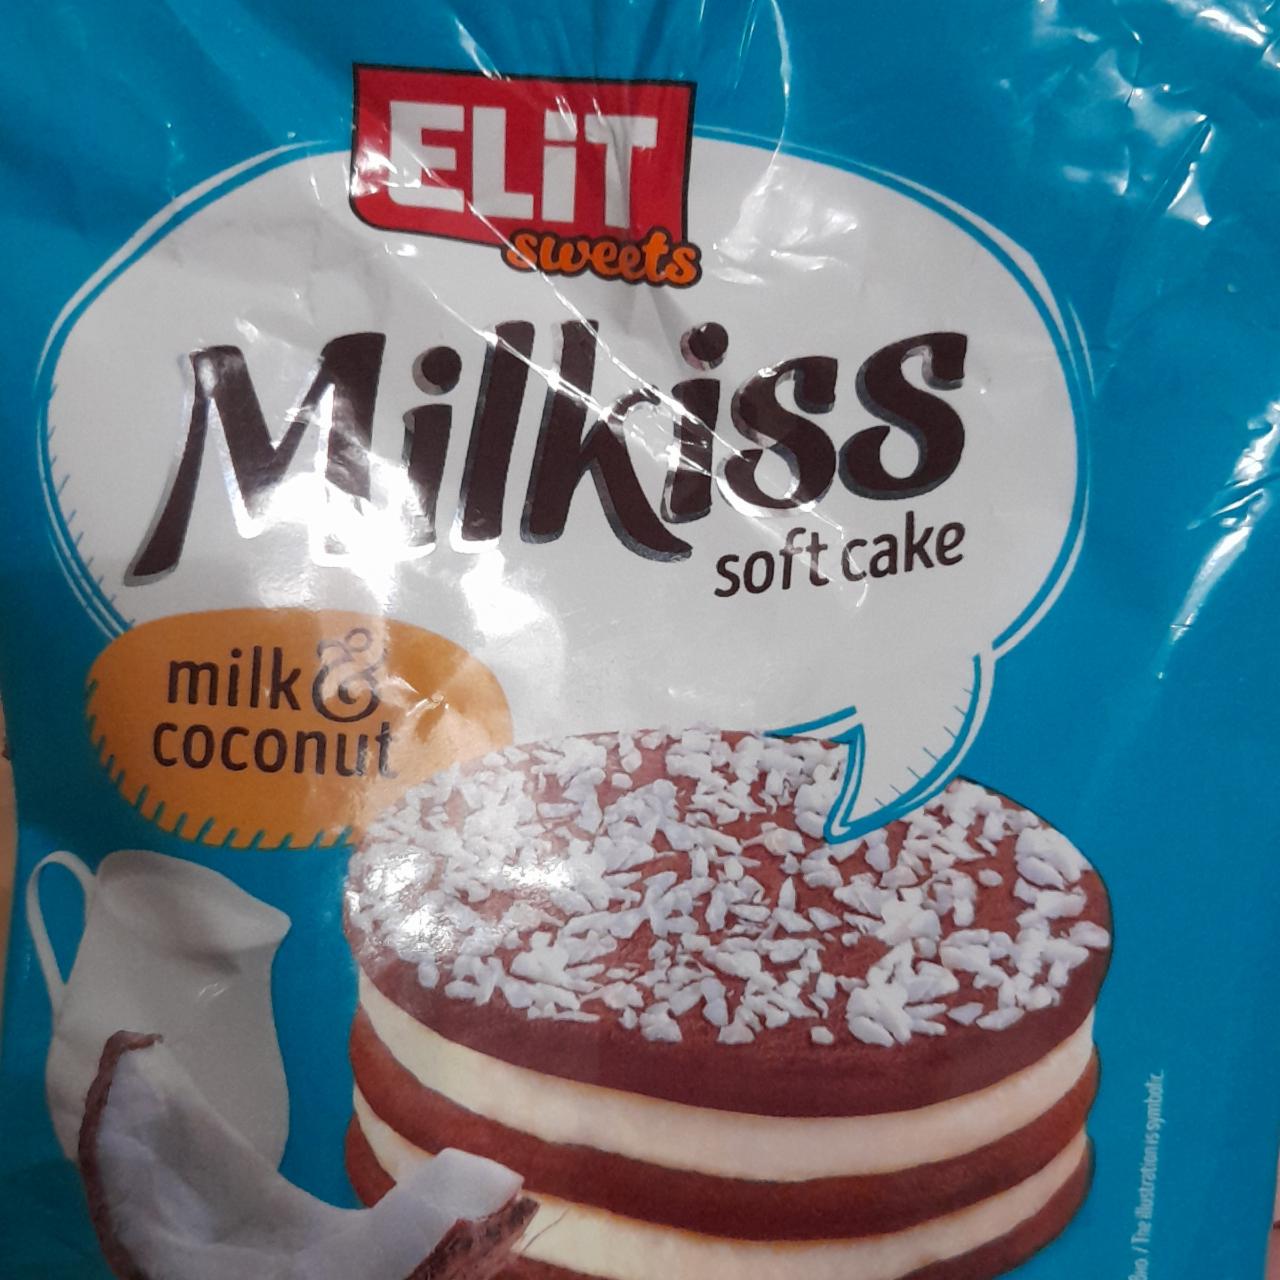 Фото - Milkiss soft cake milk coconut Elit sweets